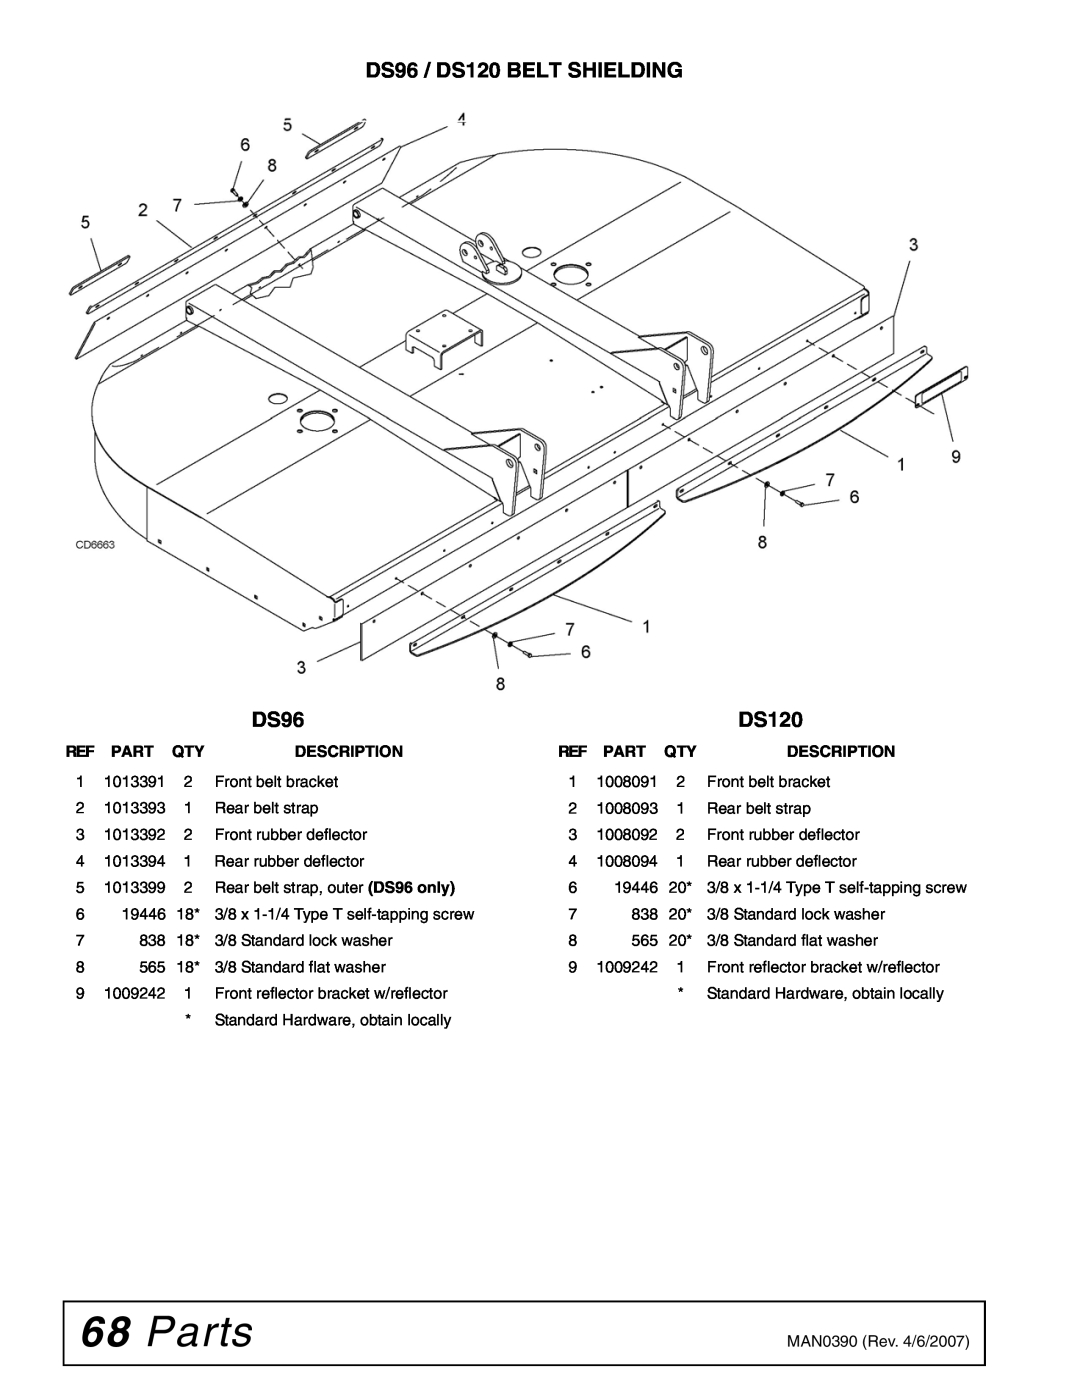 Woods Equipment manual Parts, DS96 / DS120 BELT SHIELDING, Description 